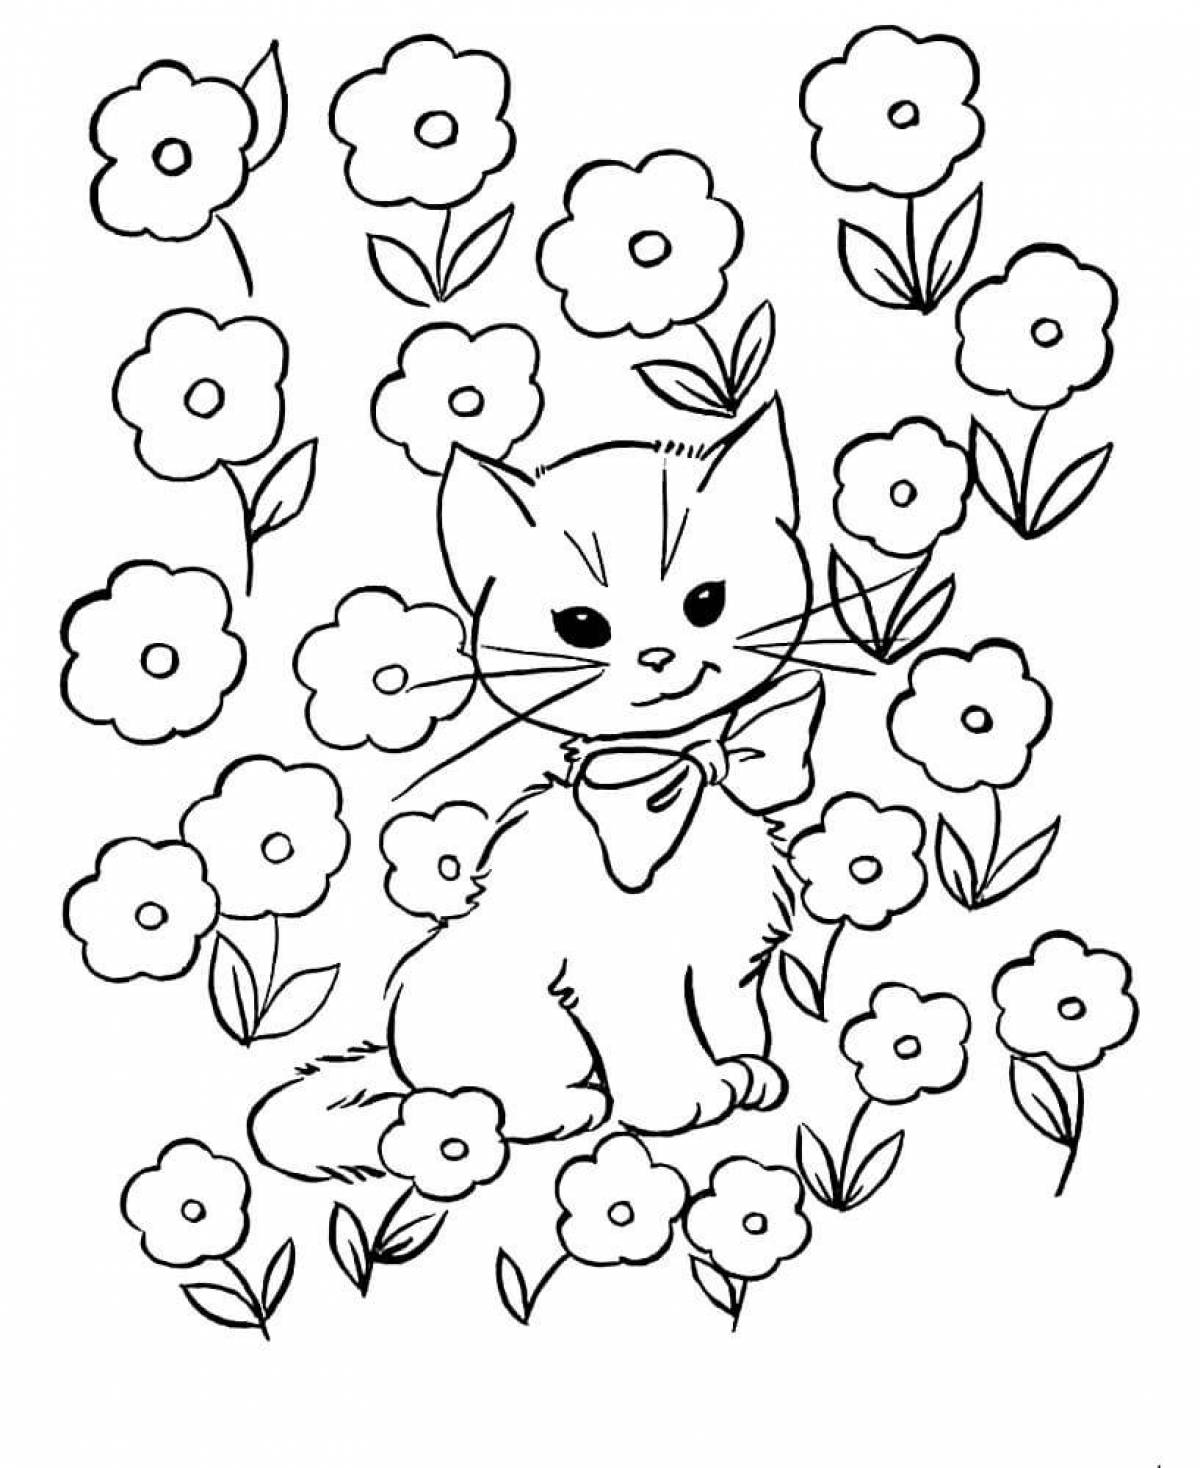 Catnap раскраска распечатать. Кошки. Раскраска. Раскраска цветочек. Кошка раскраска для детей. Котик раскраска для детей.